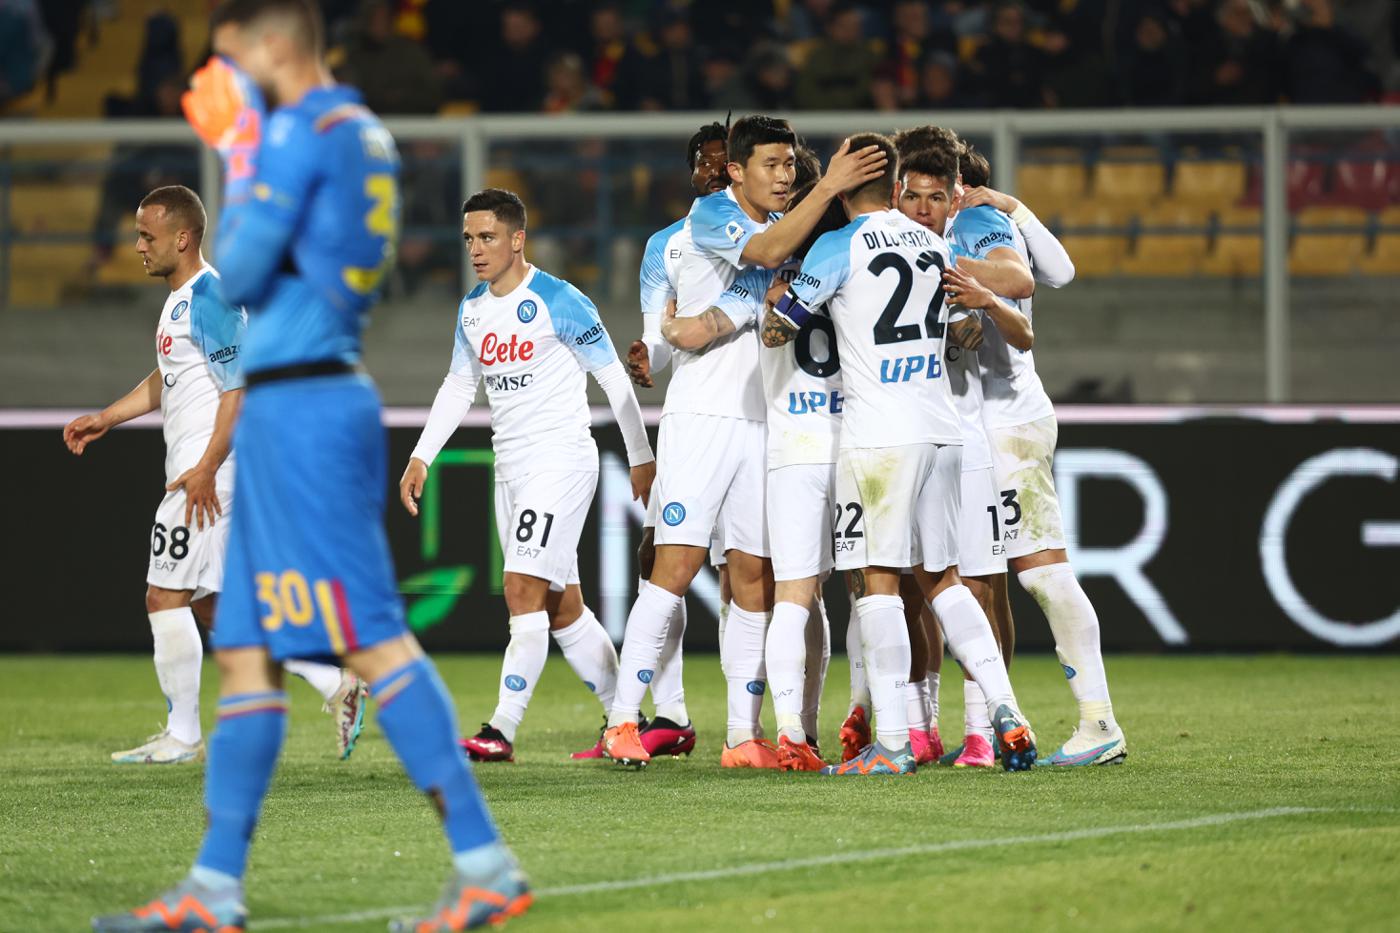 Lecce v Napoli - 1:2. Mistrzostwa Włoch, runda 29. Przegląd meczów, statystyki